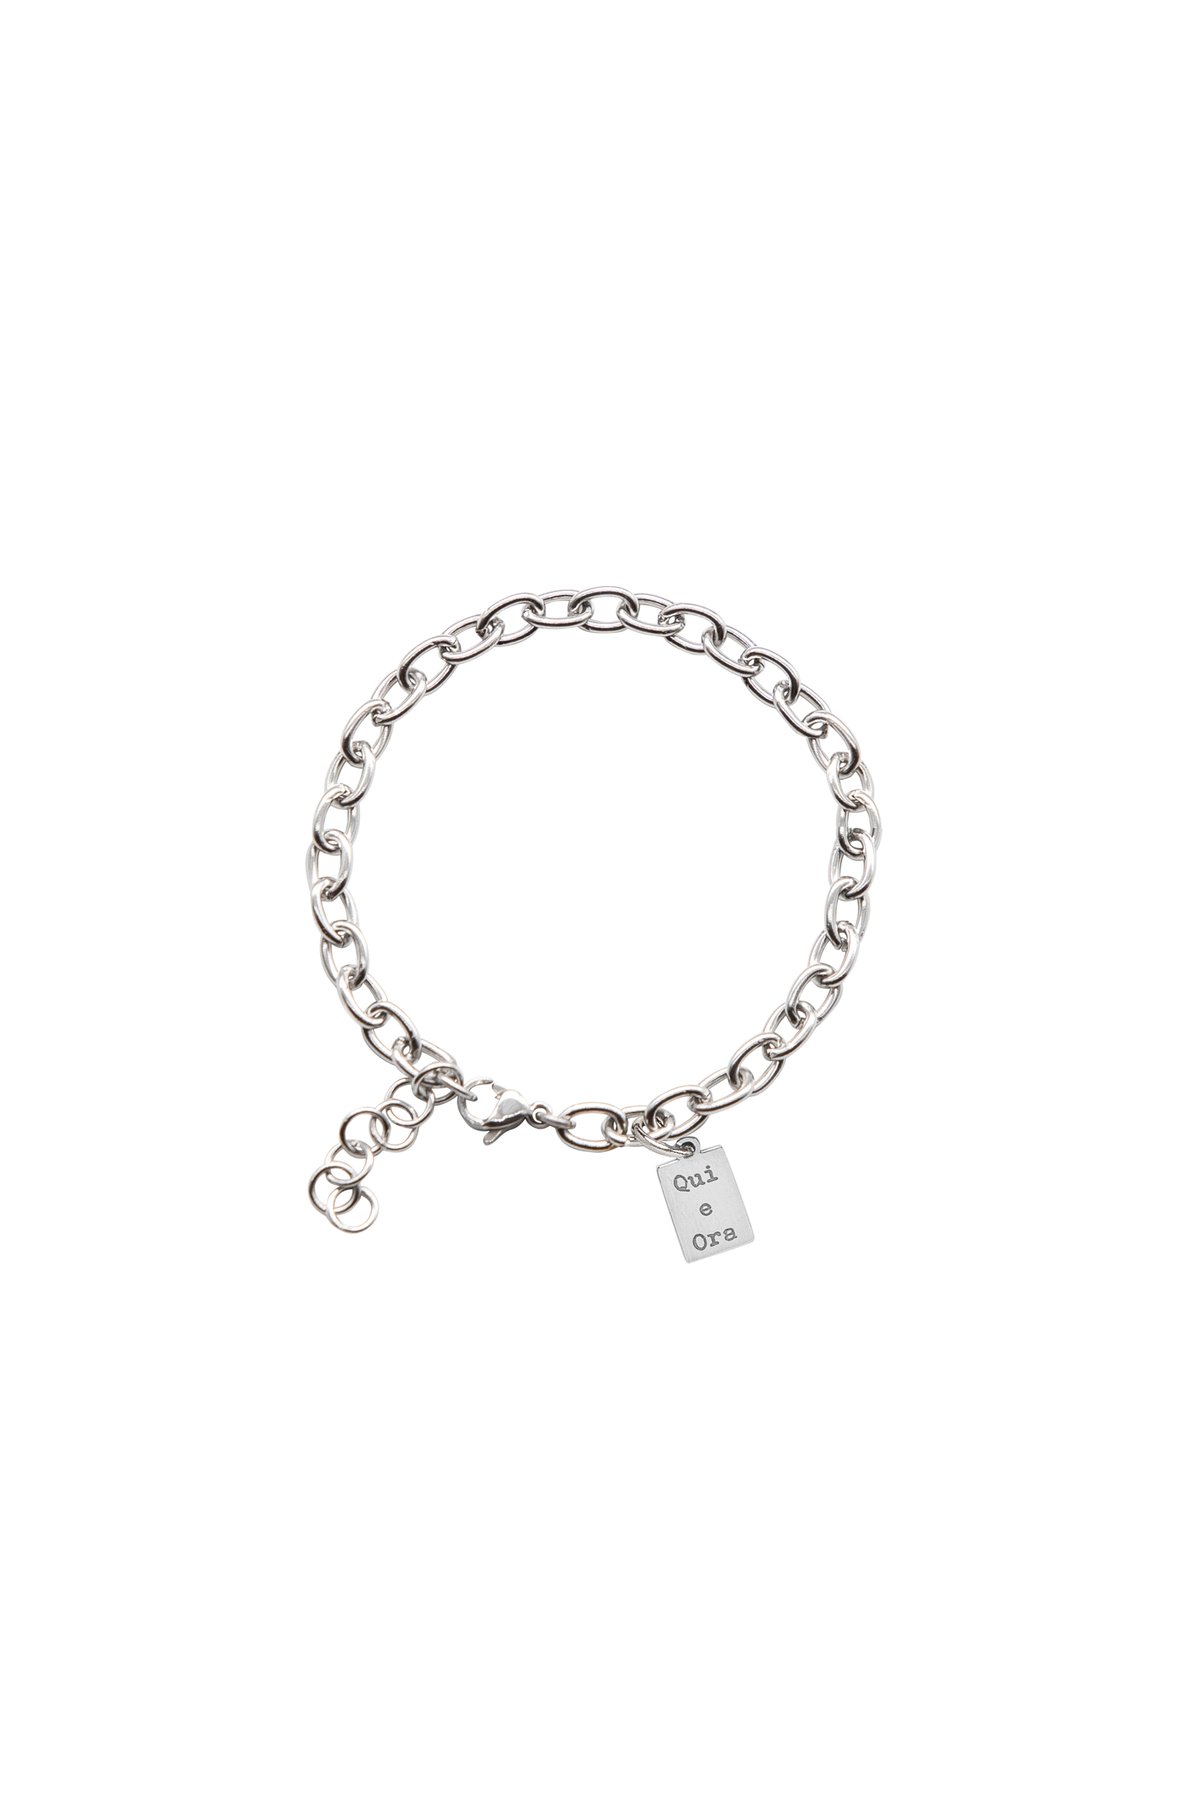 Image of Qui e Ora ⭑ bracelet in silver